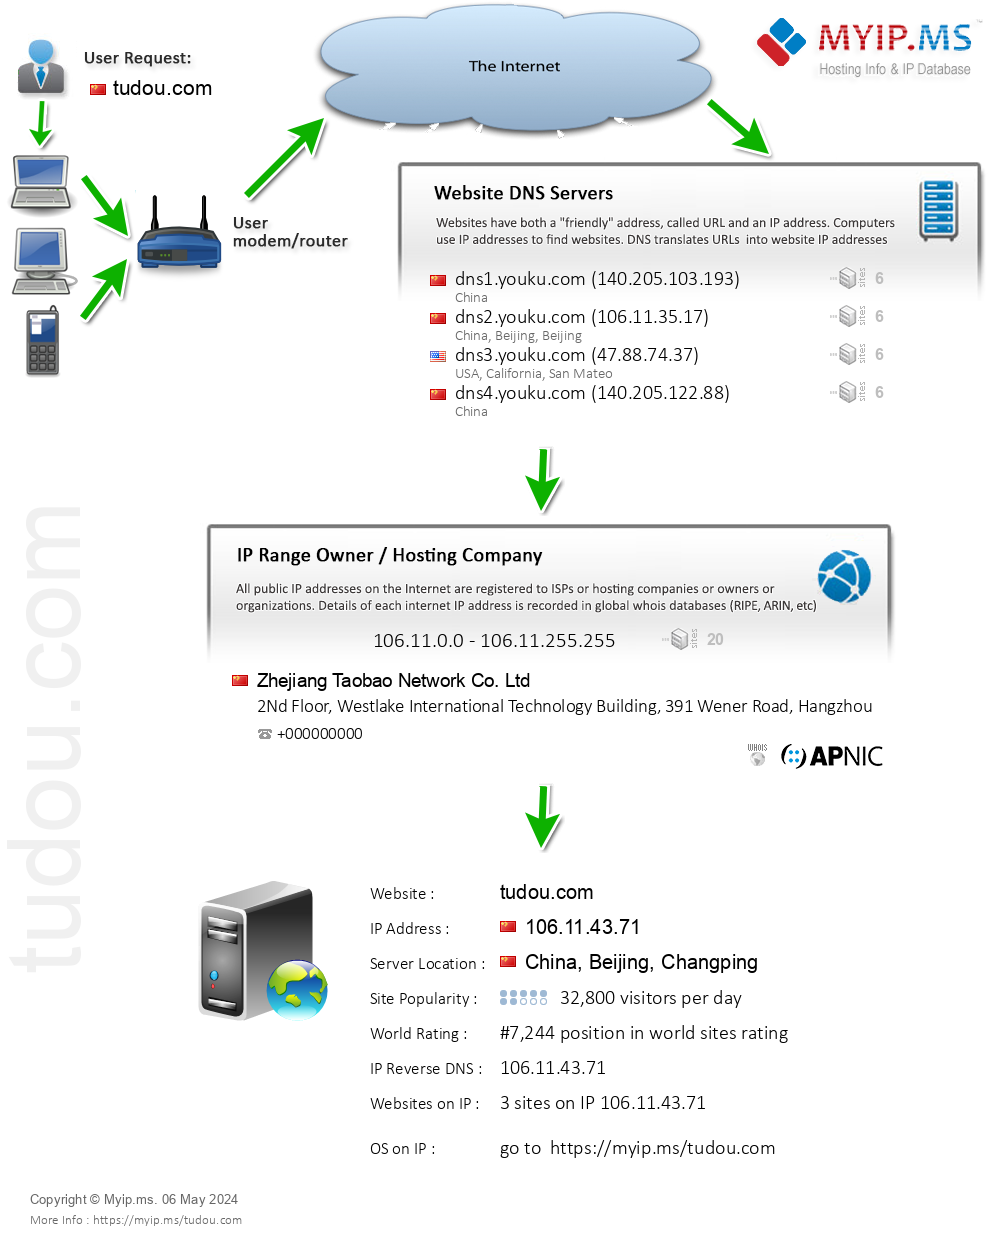 Tudou.com - Website Hosting Visual IP Diagram